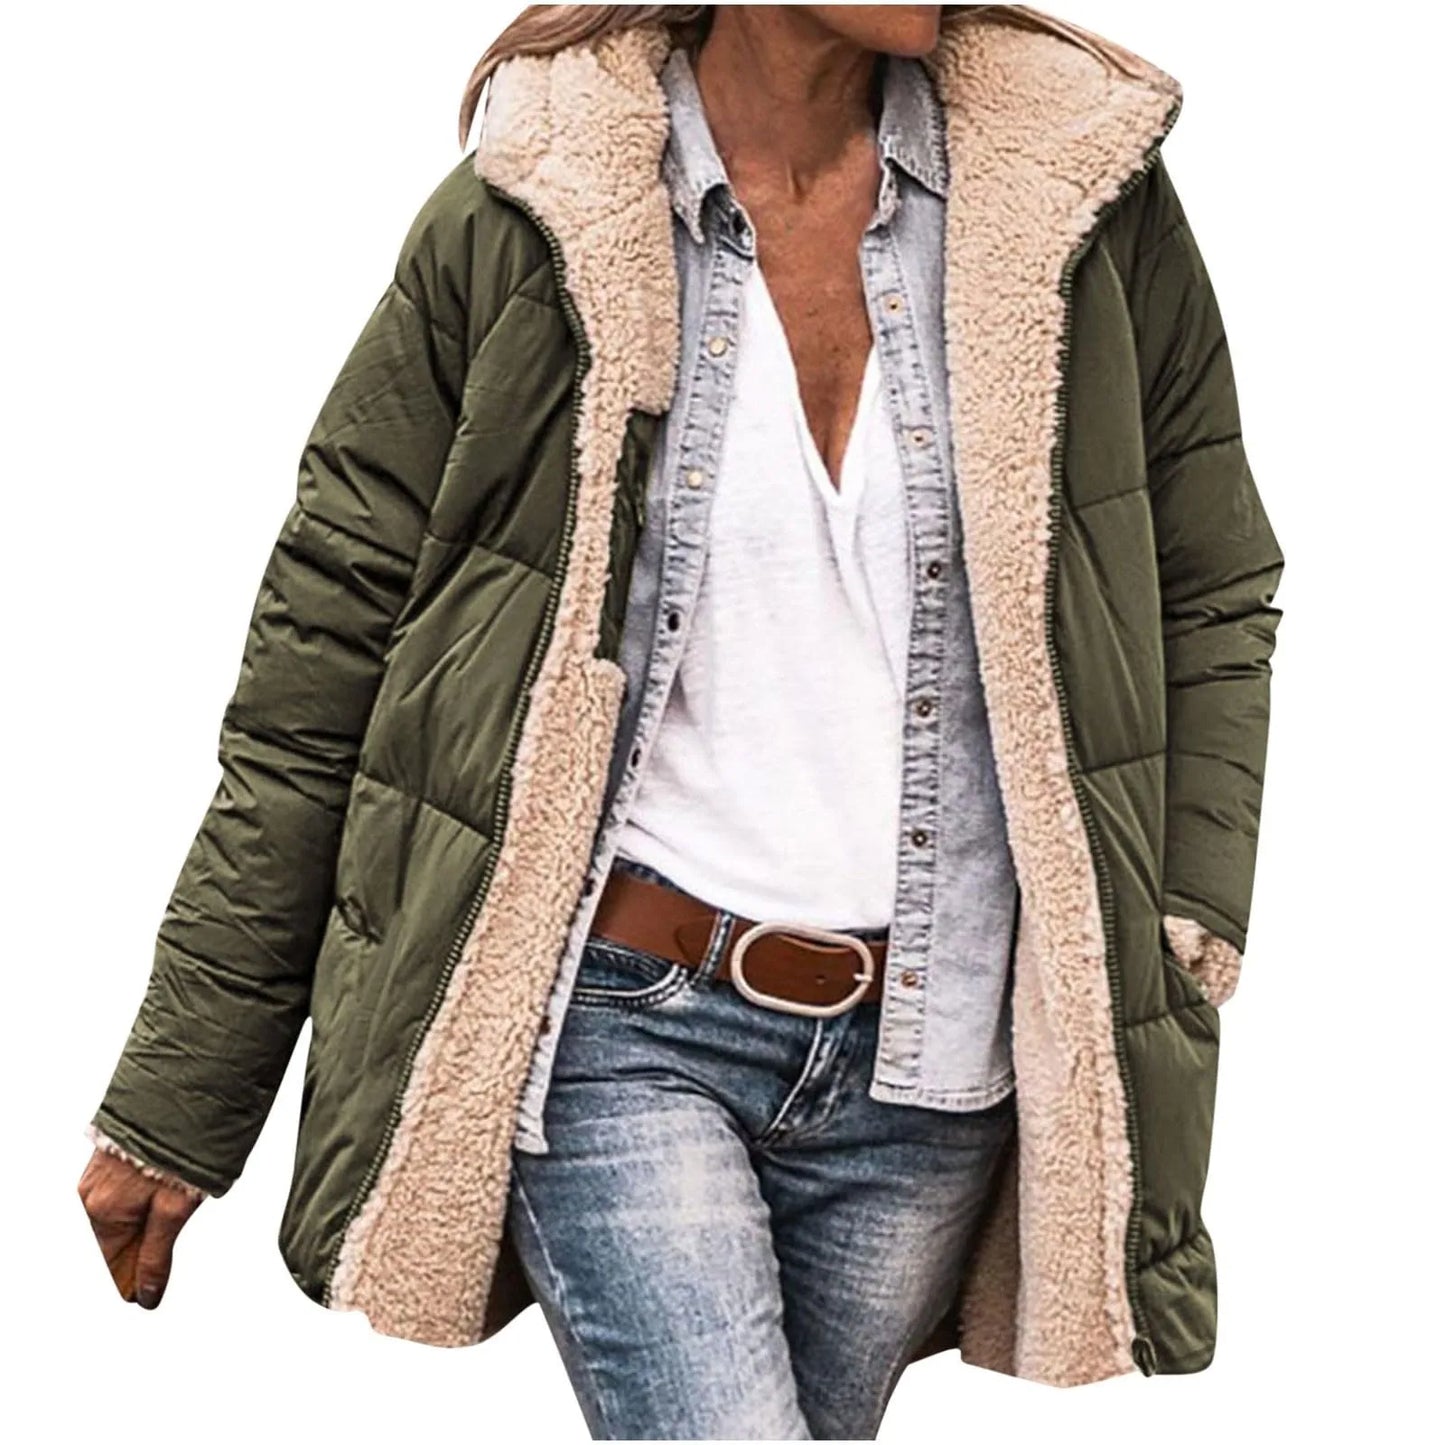 New Winter Women Cotton Jacket Fleece Casual Slim Coat Hooded Parkas Wadded Warm Overcoat Plus Size Female Coat